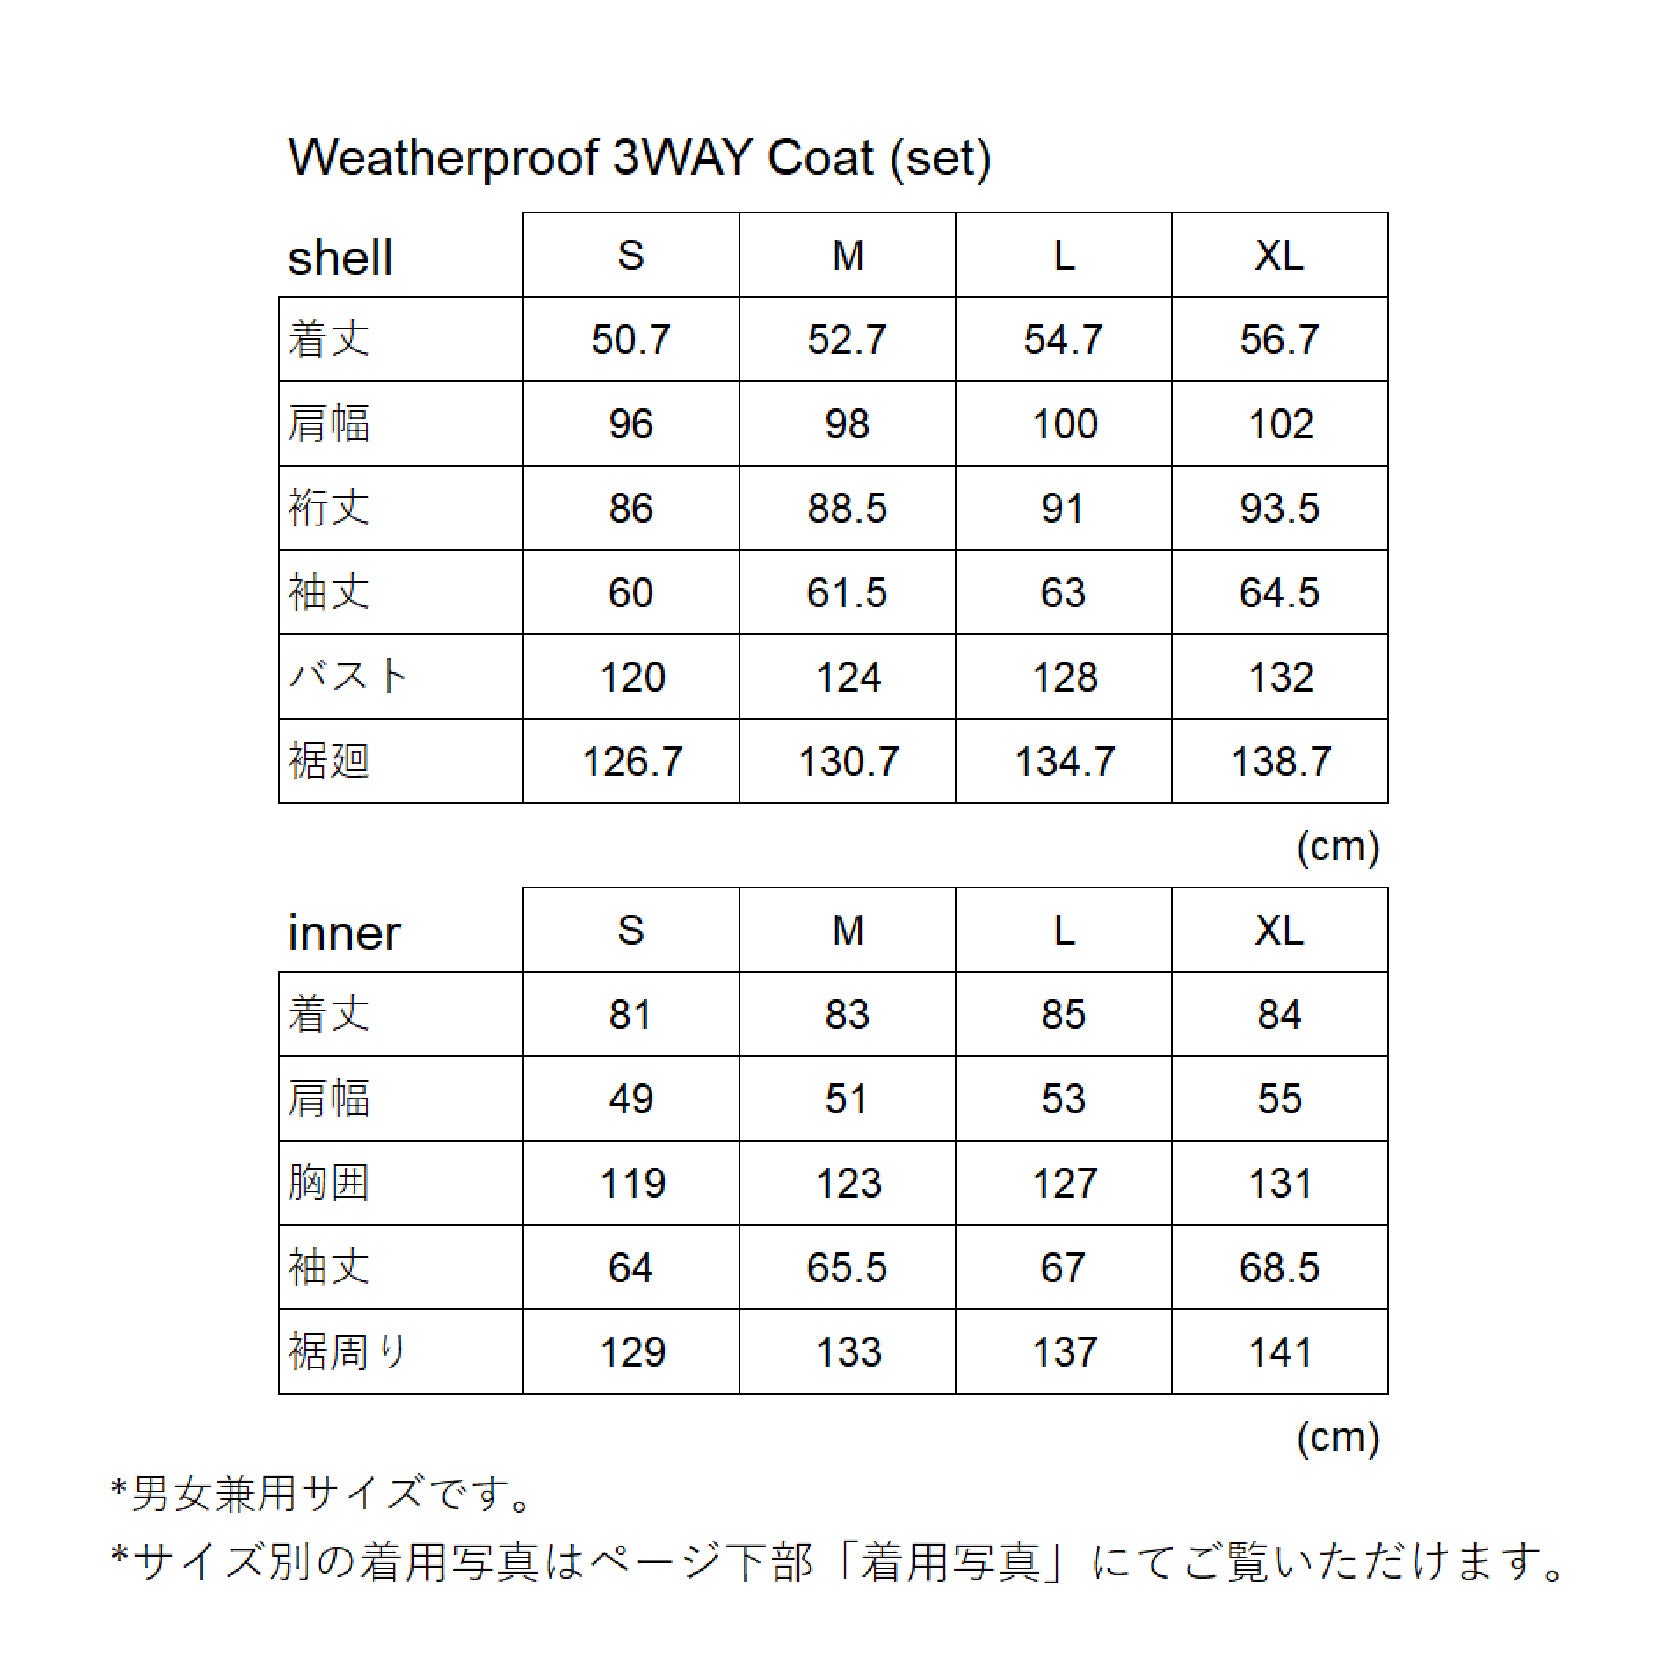 Weatherproof 3WAY Coat (set)